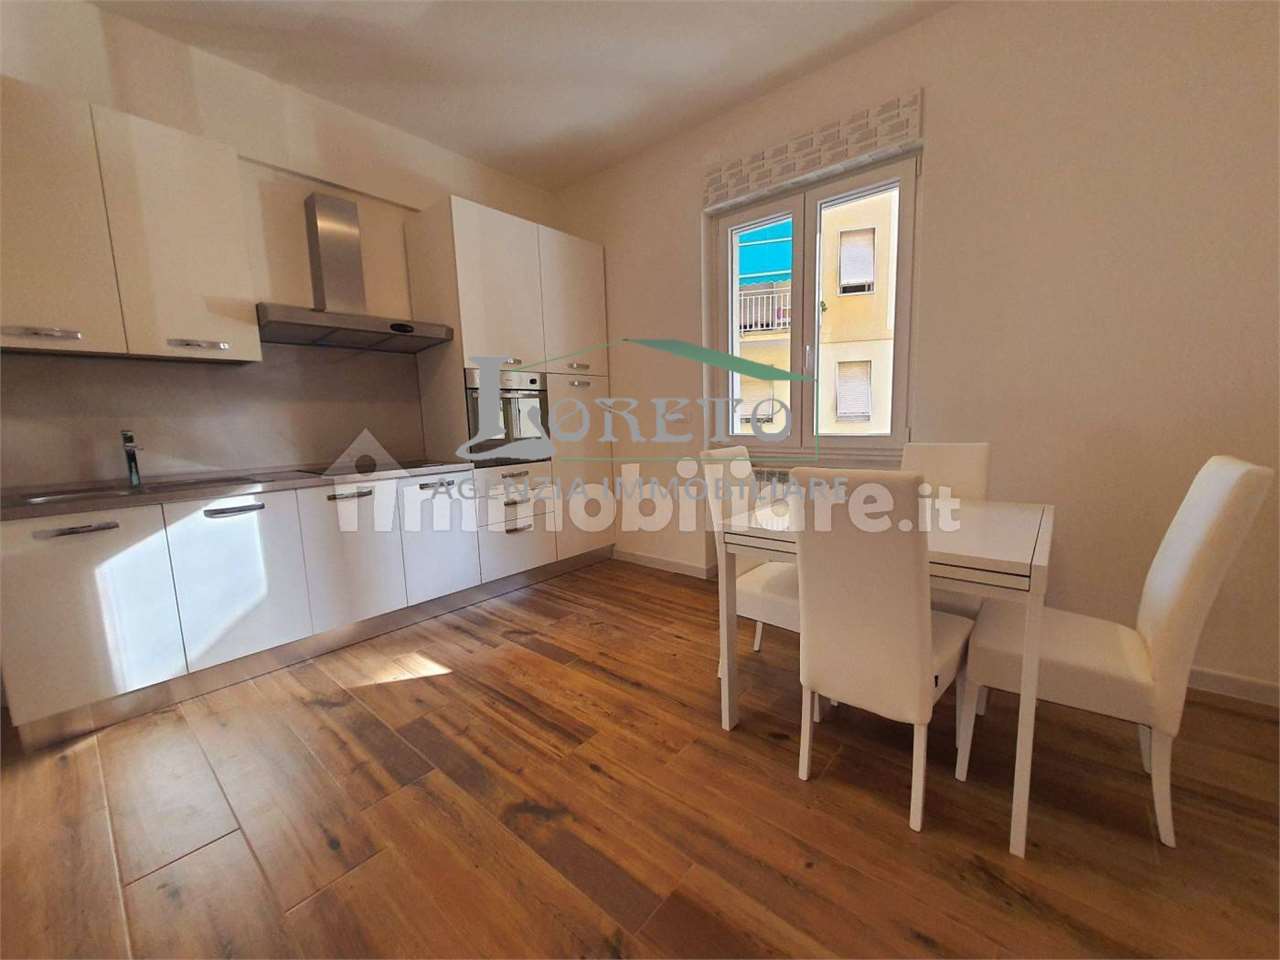 Appartamento in vendita a Rapallo, 3 locali, prezzo € 185.000 | PortaleAgenzieImmobiliari.it